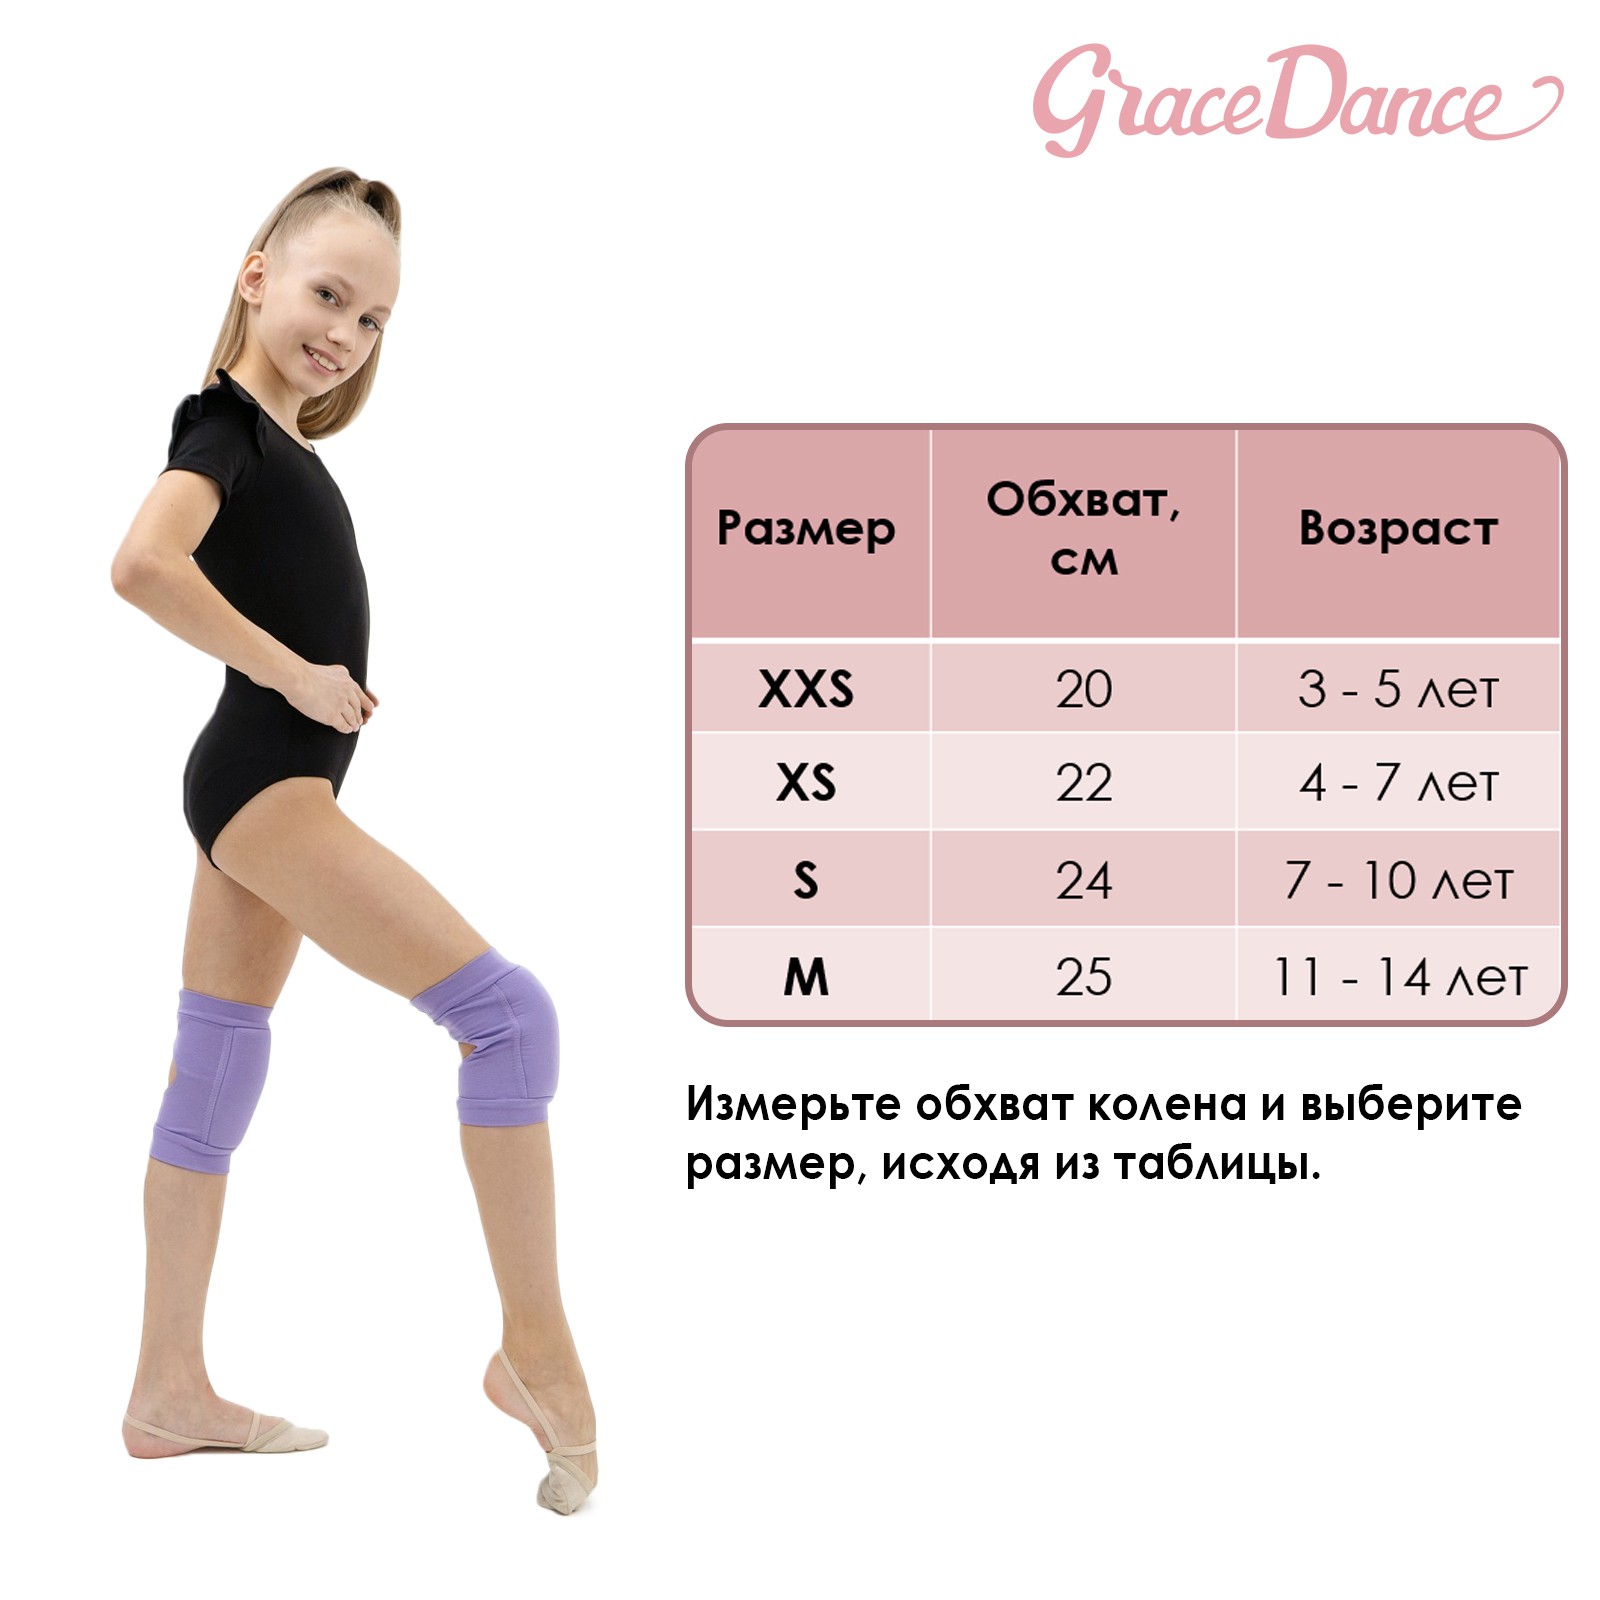 Наколенники Grace Dance для гимнастики и танцев с уплотнителем. размер M 11-14 лет. цвет бирюза/чёрный - фото 7